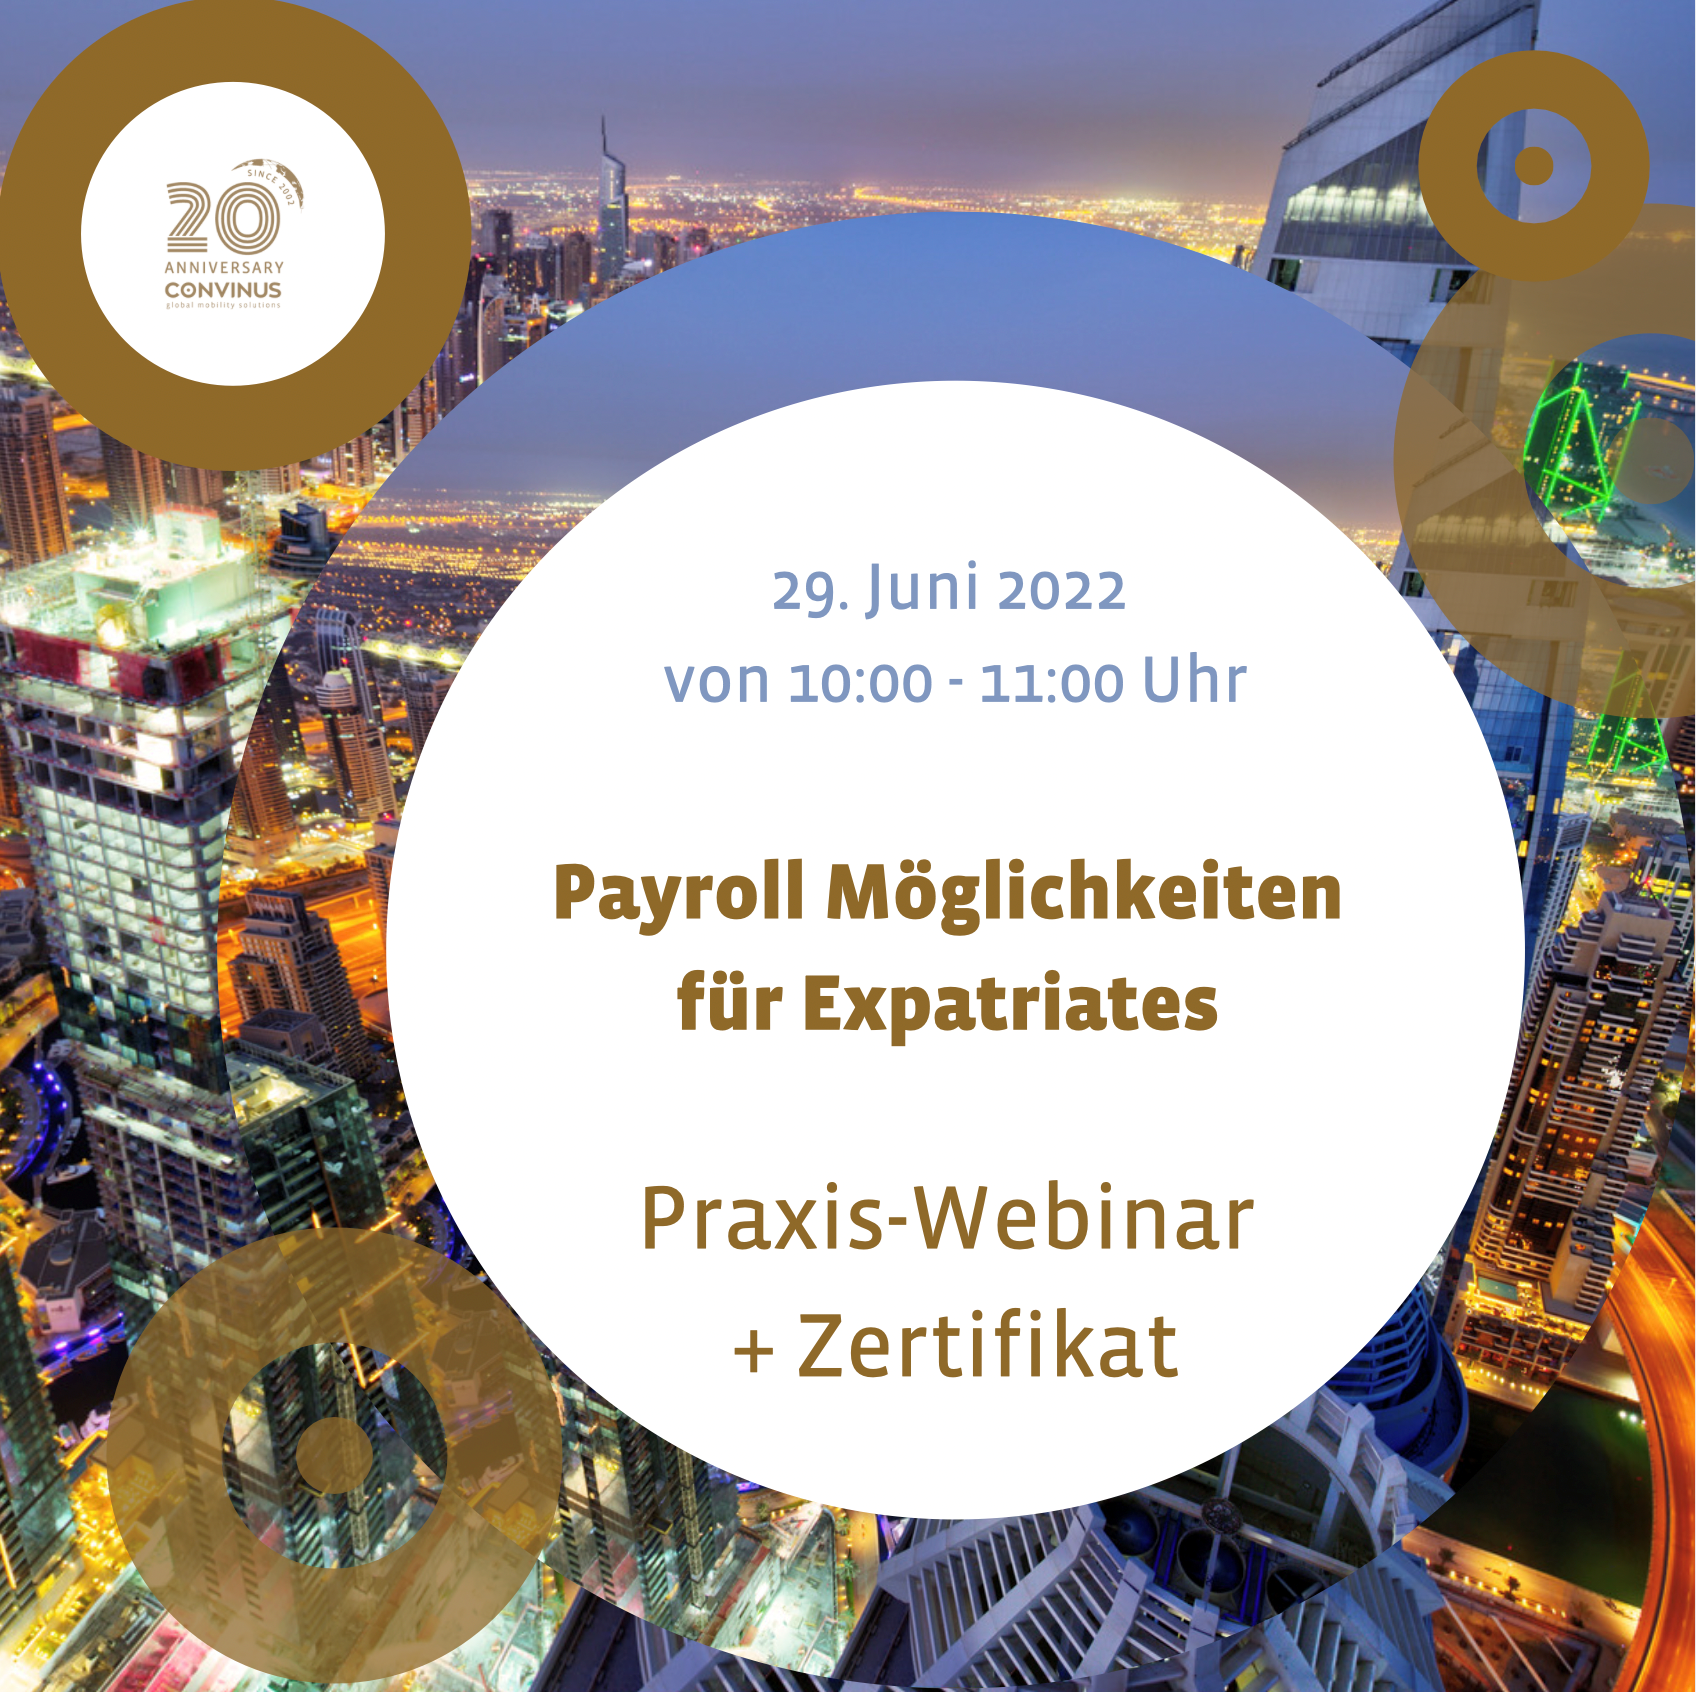 Payroll Möglichkeiten für Expatriates